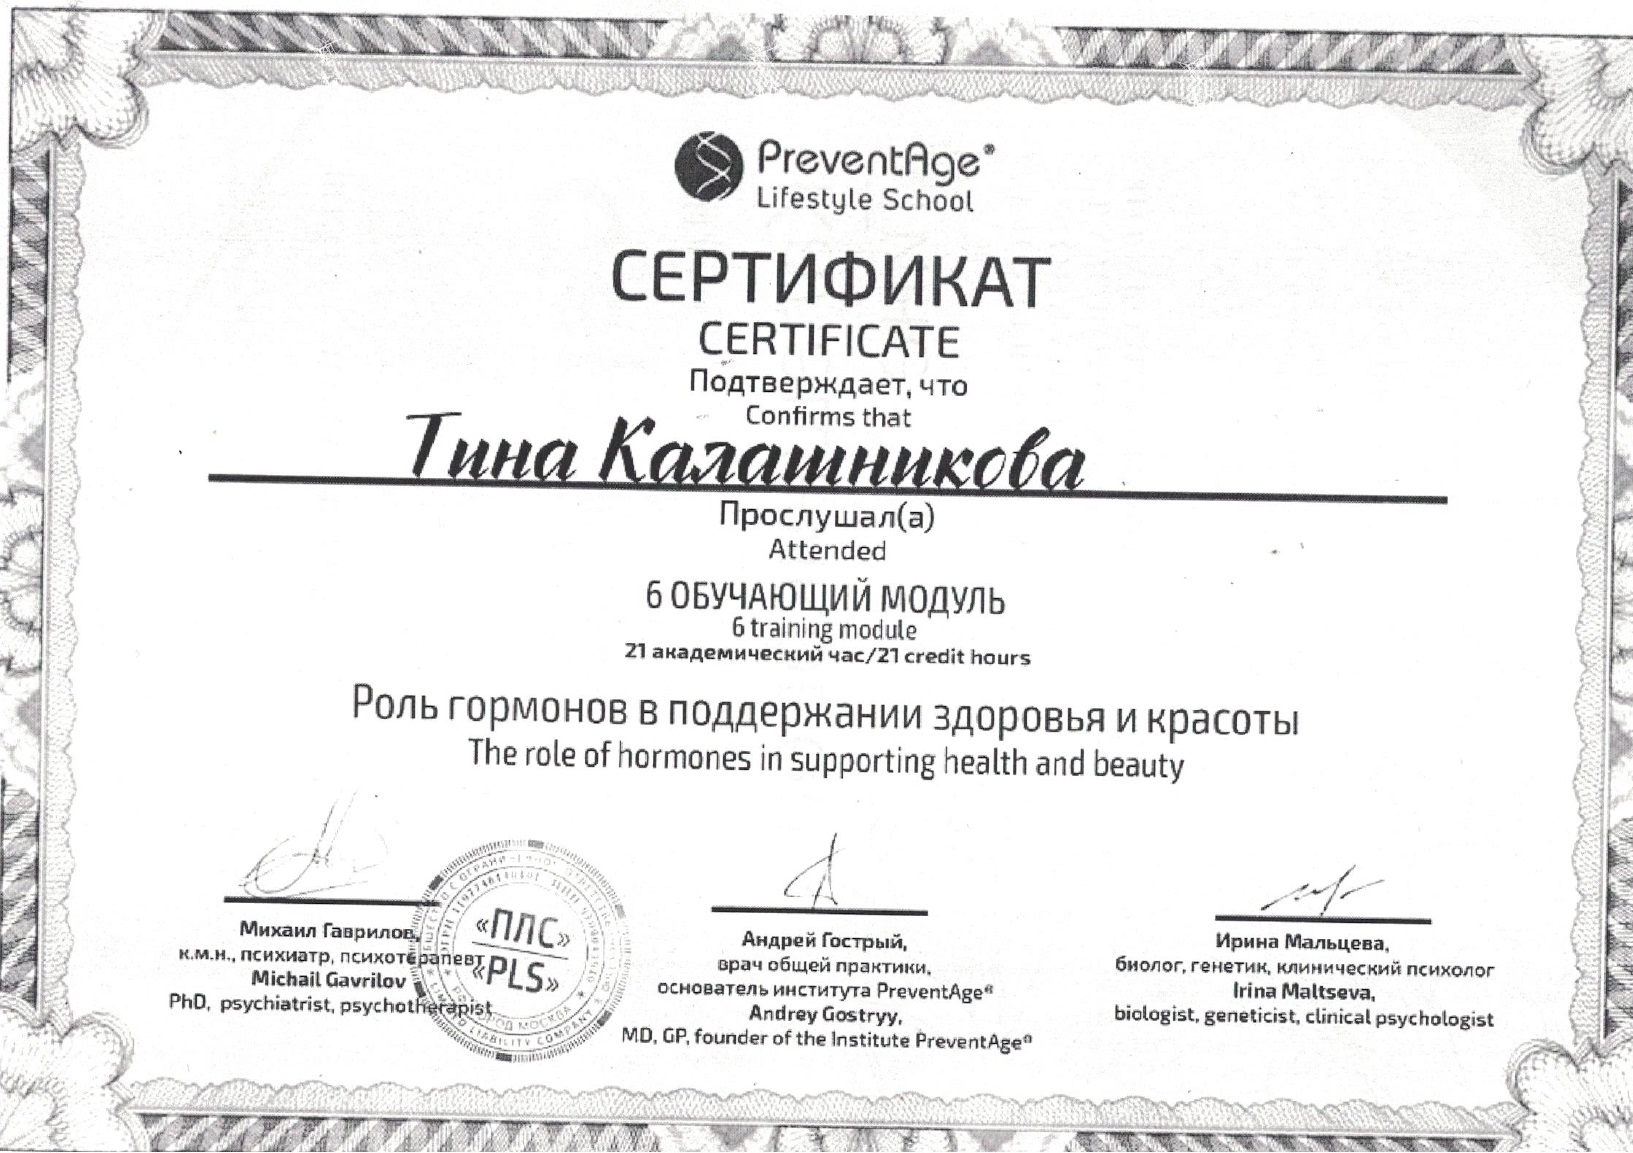 Скан сертификата роль гормонов в поддержании здоровья, Калашникова Т. А.